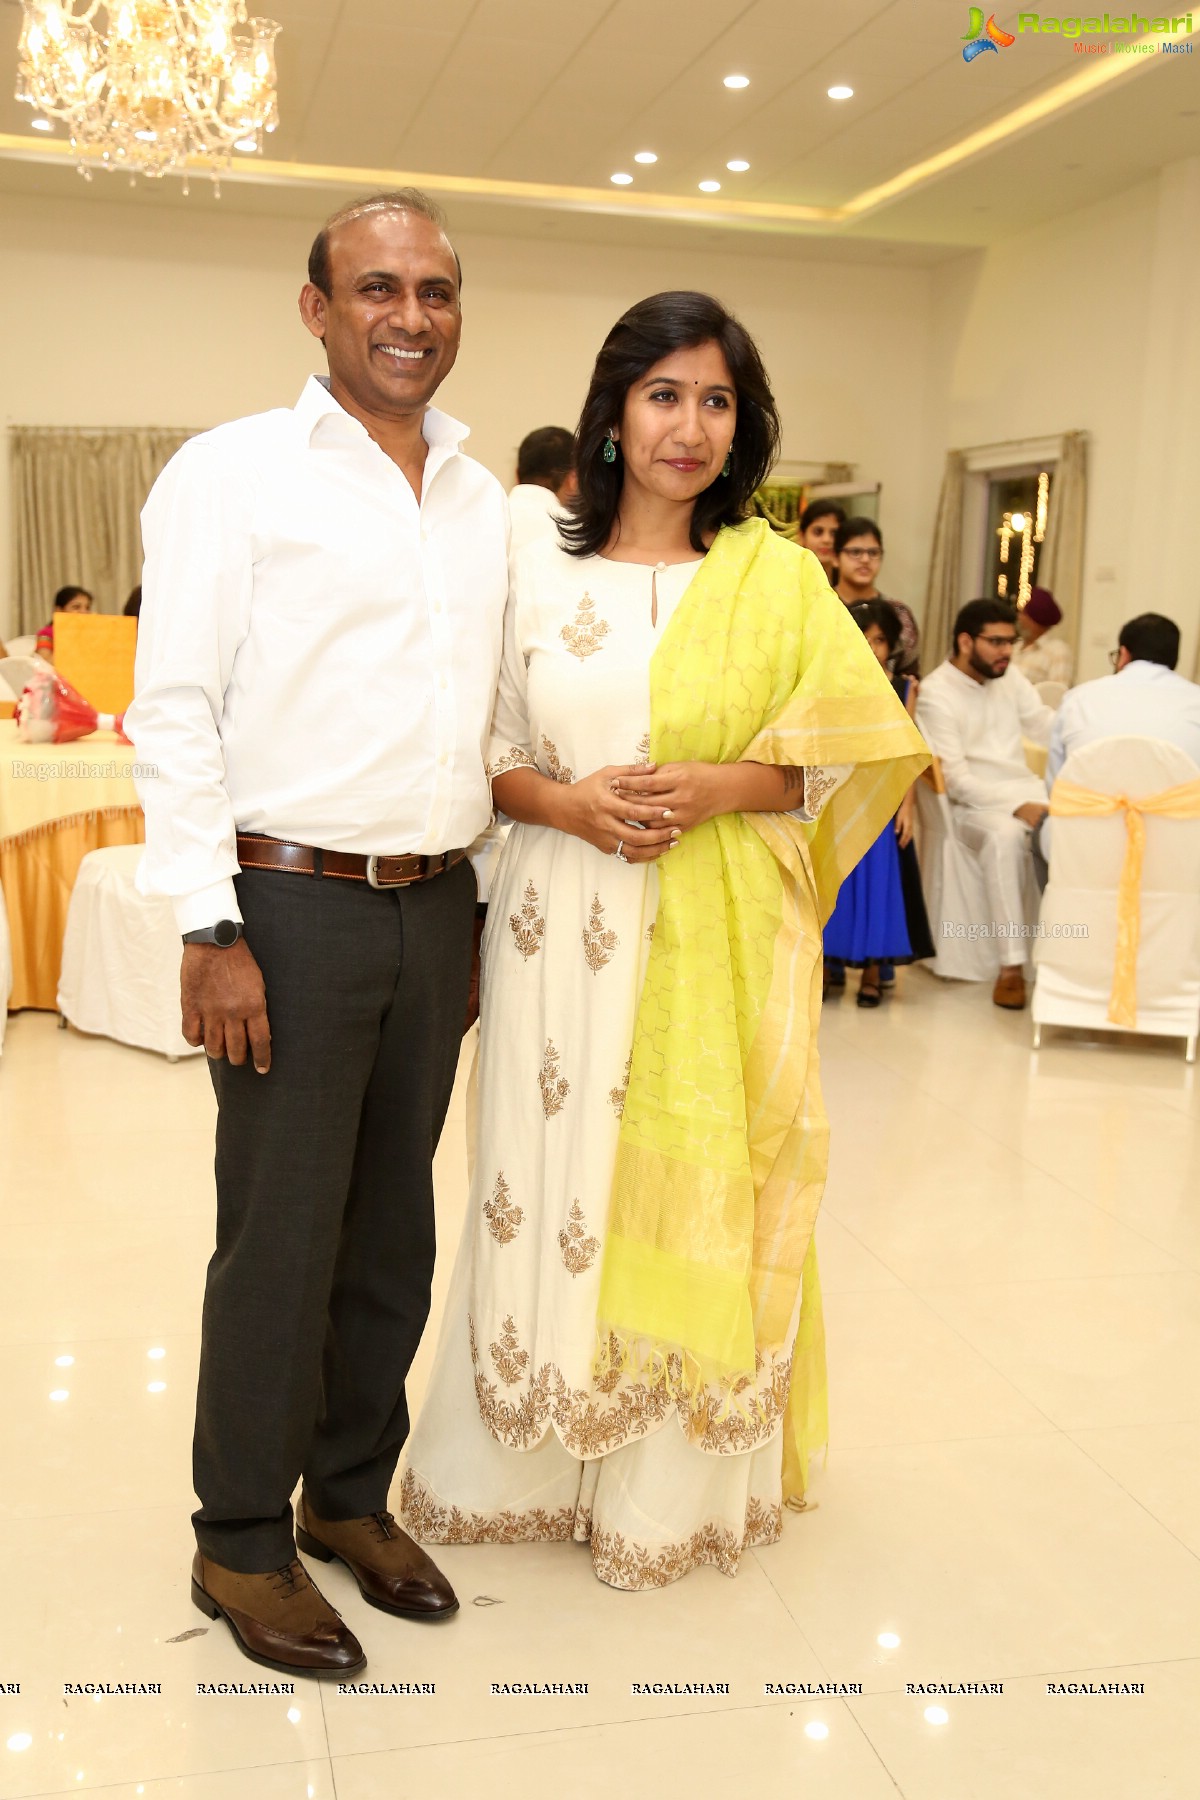 Grand Reception of Gurinder and Harleen at Ashiana Banquets, Road #1, Banjara Hills, Hyderabad